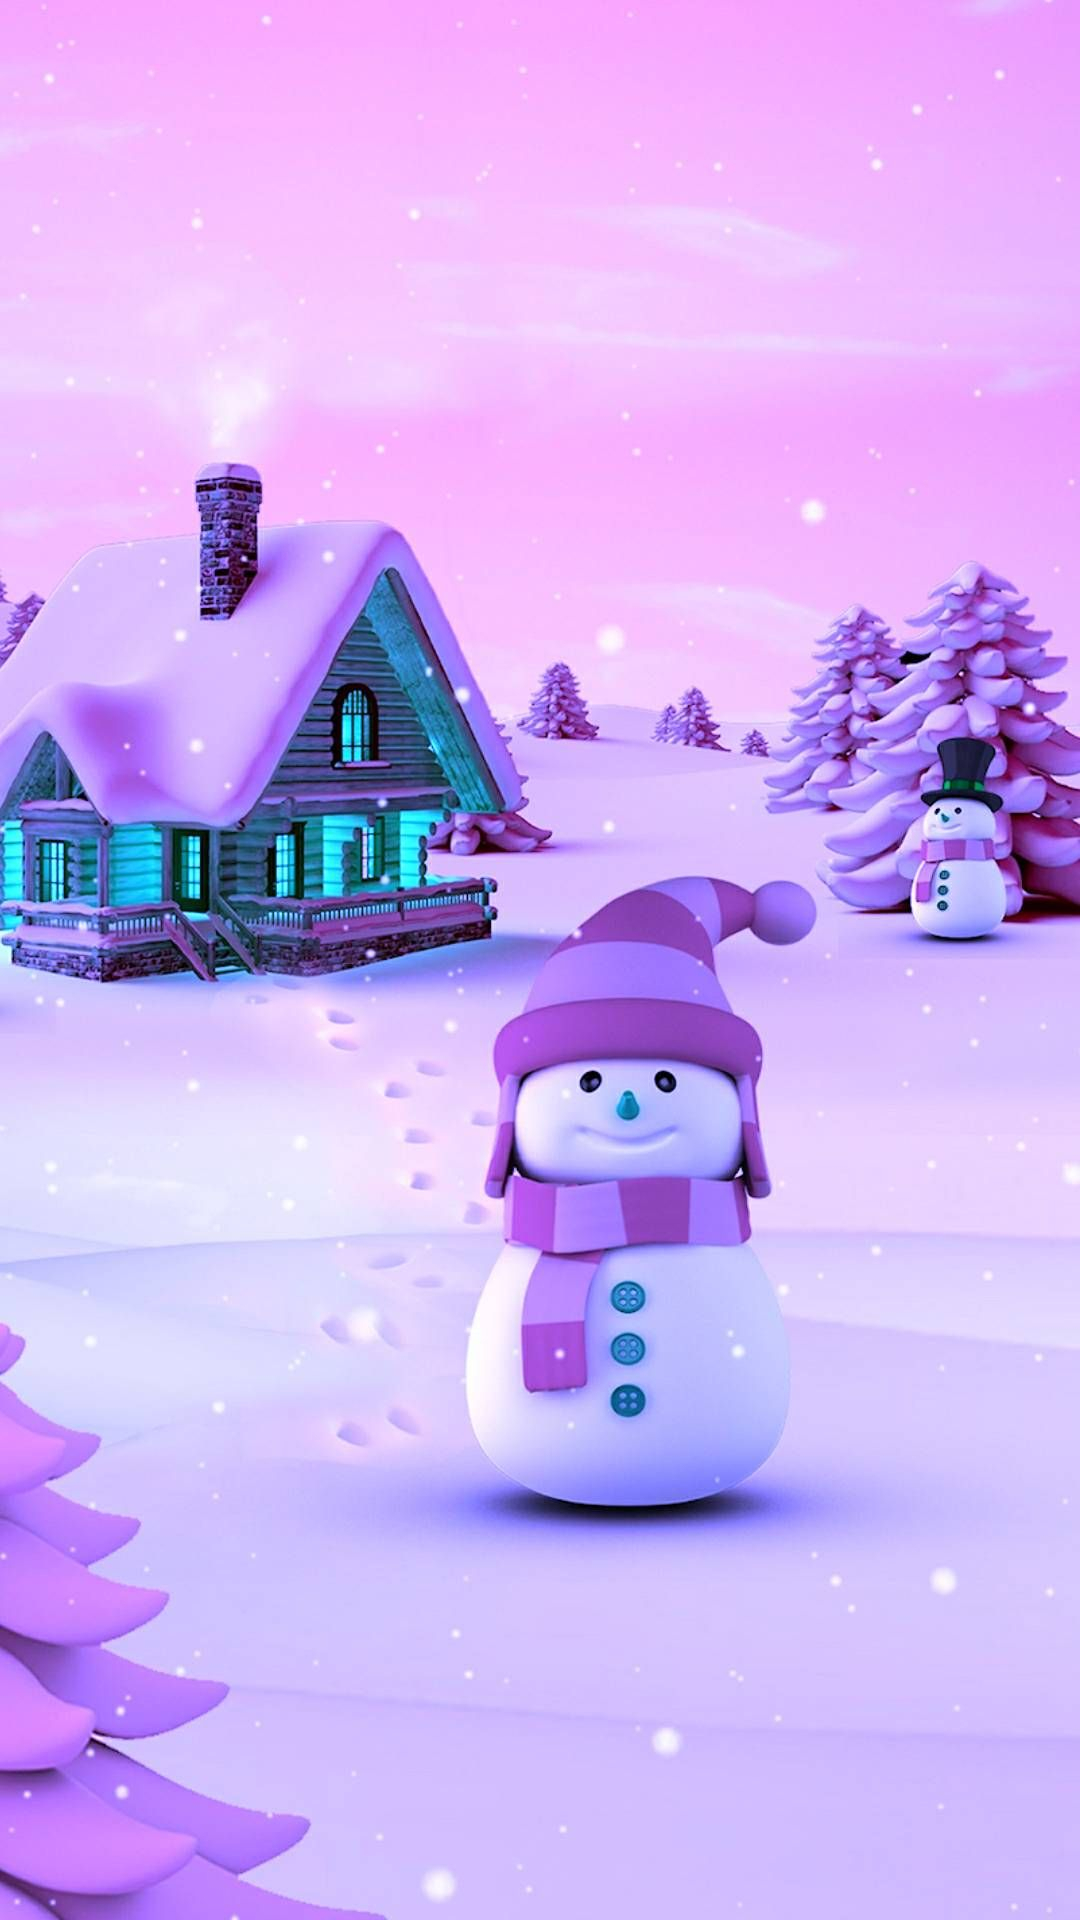 1080x1920 Snowman Winter Christmas iPhone Wallpaper | Wallpaper iphone christmas, Snowman wallpaper, Christmas wallpaper